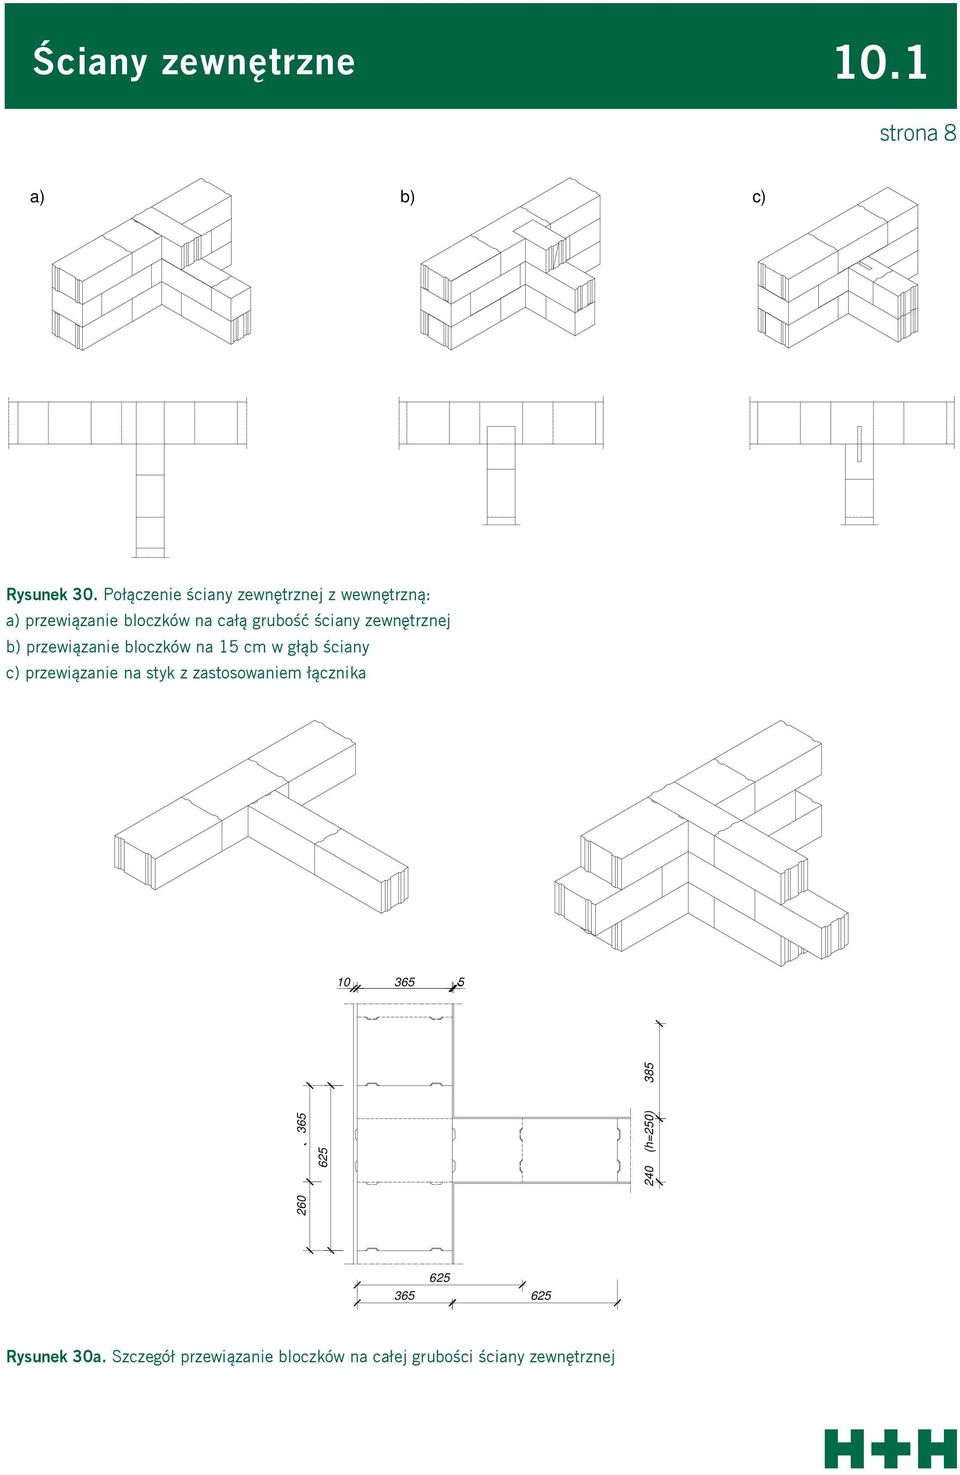 ściany zewnętrznej b) przewiązanie bloczków na 5 cm w głąb ściany c) przewiązanie na styk